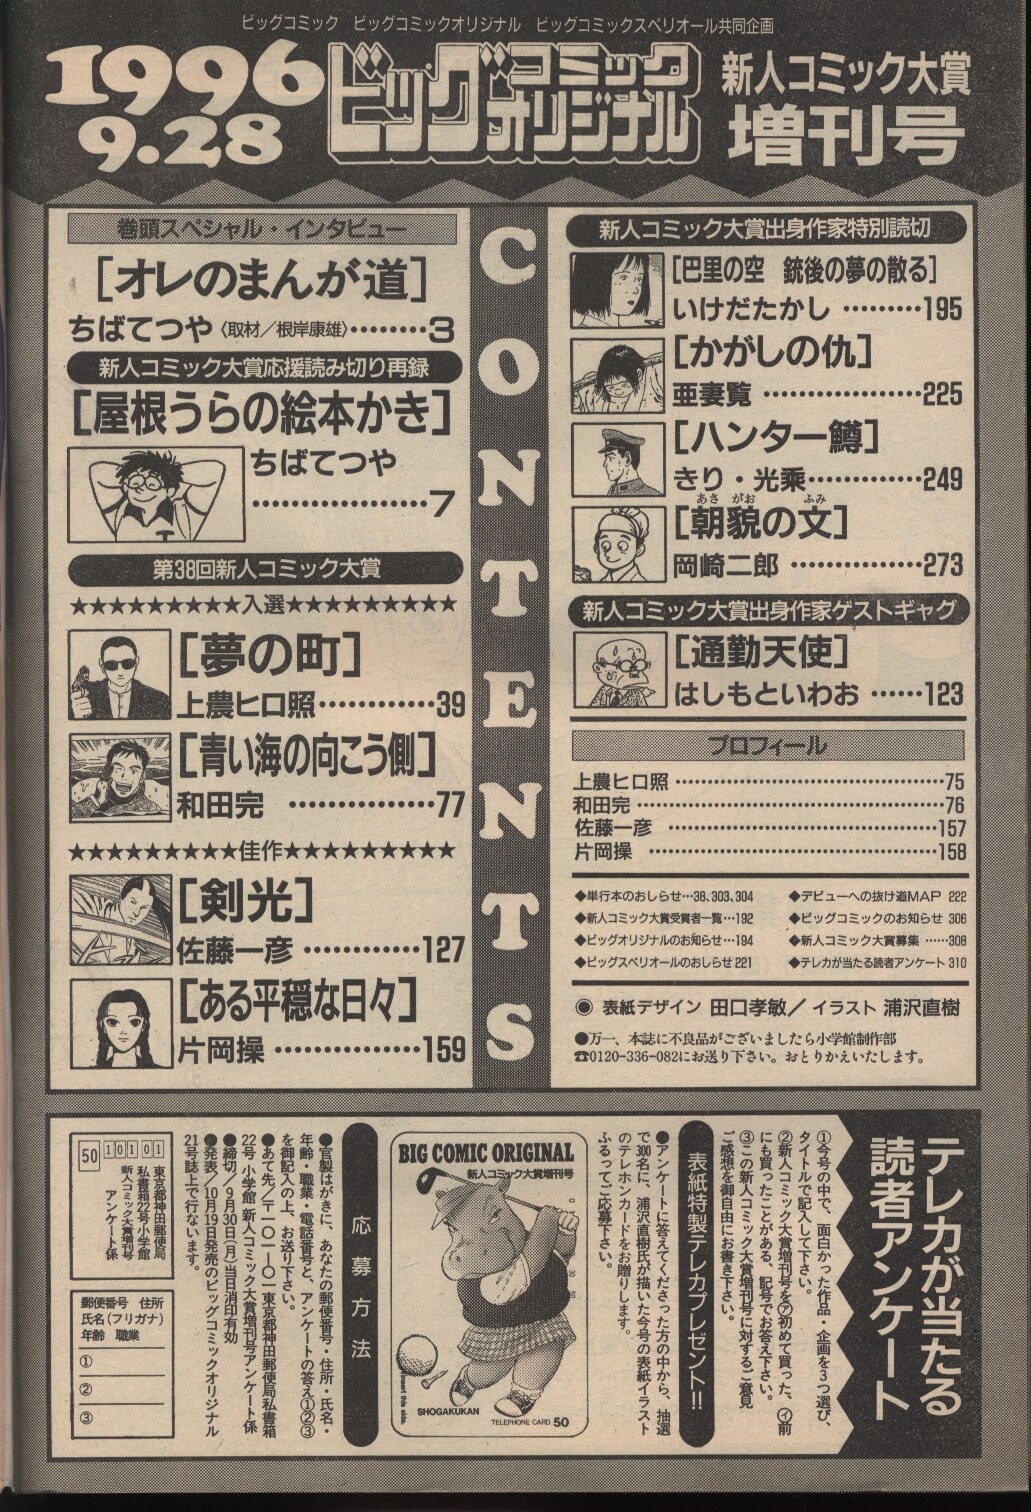 ビッグコミックオリジナル1996年9月28日 新人コミック大賞増刊号 まんだらけ Mandarake